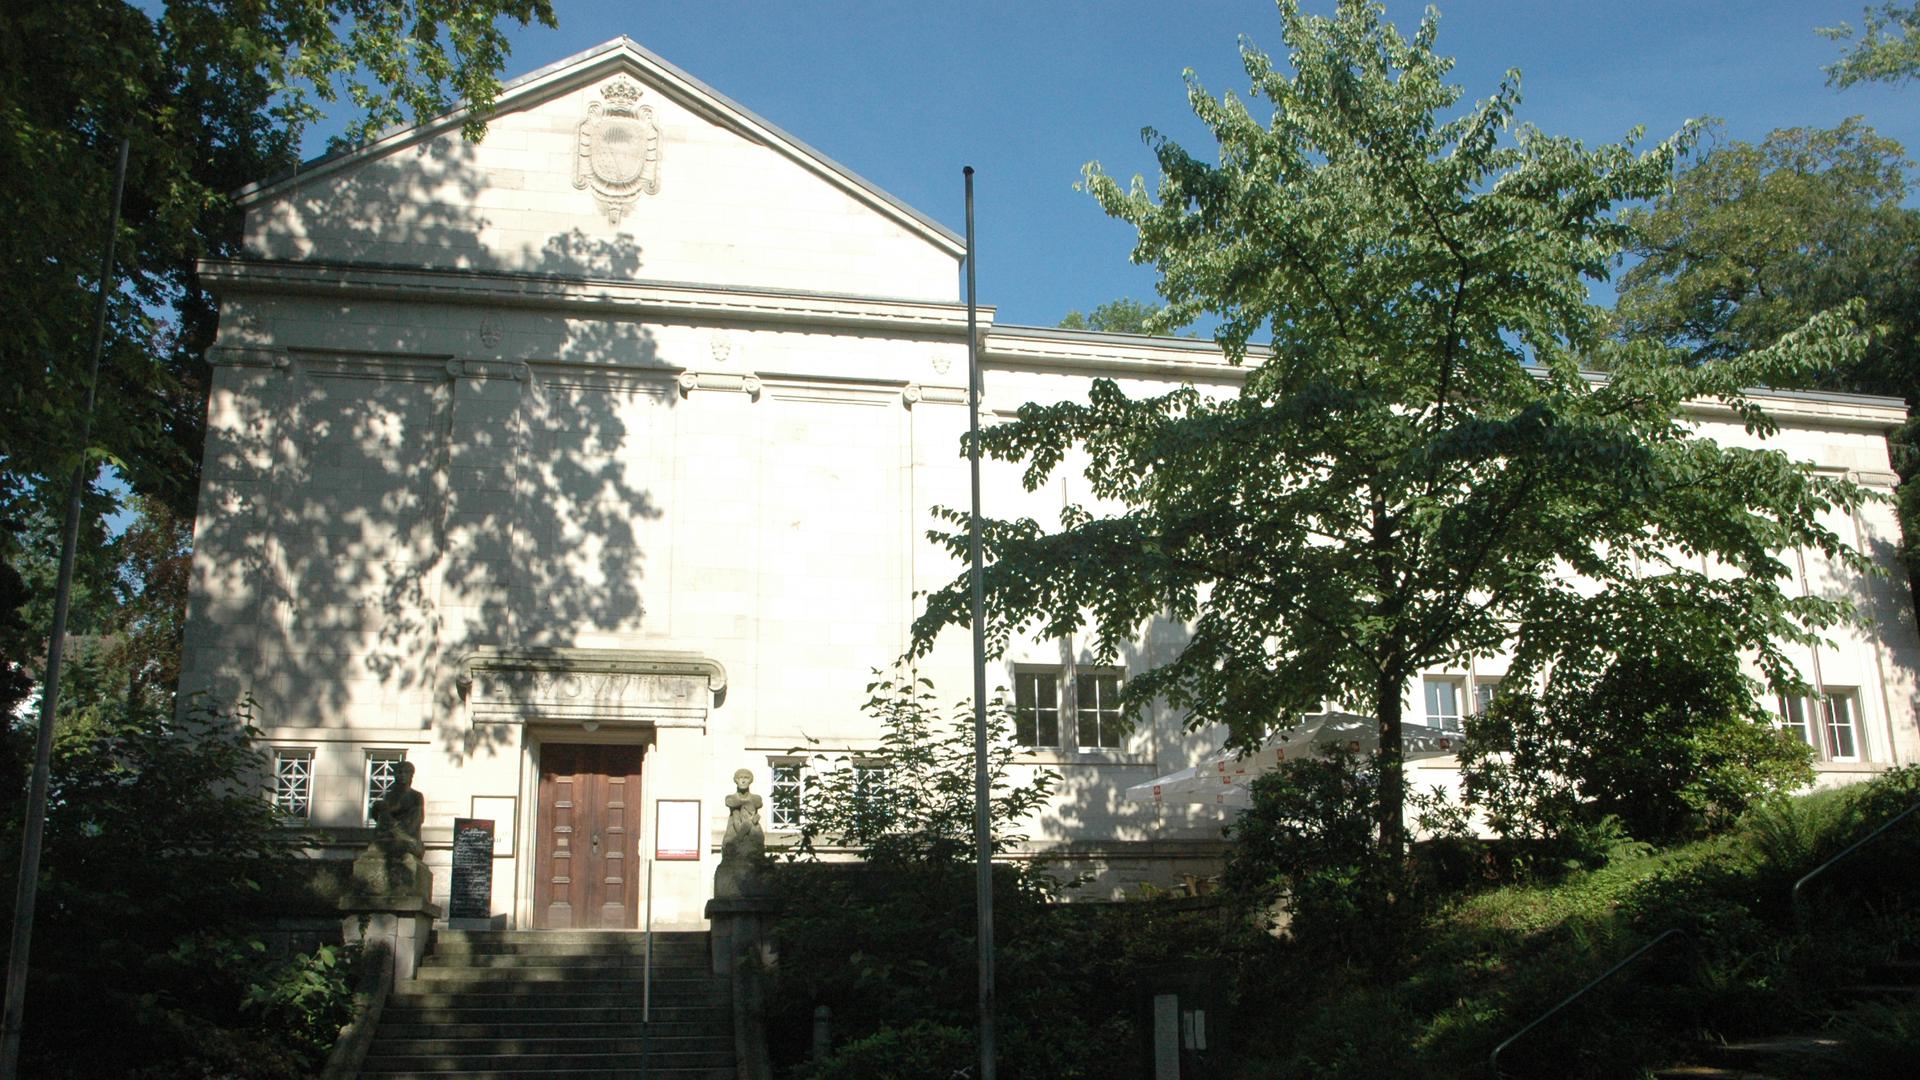 Kunsthalle Baden-Baden